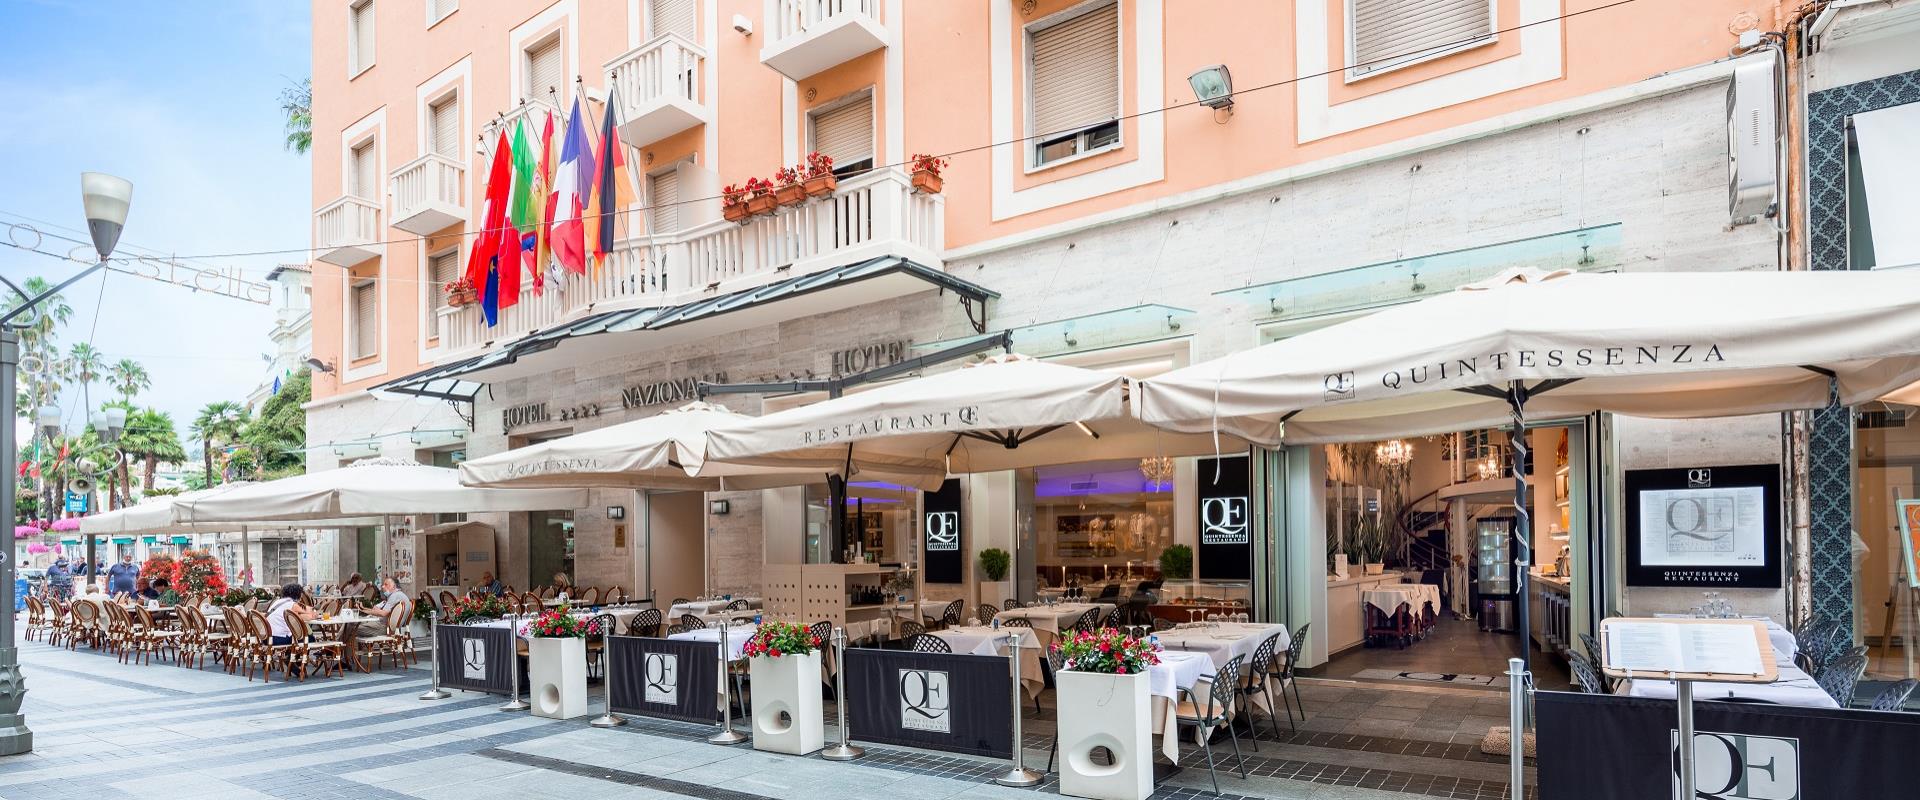 Prova le specialità del nostro ristorante a Sanremo centro